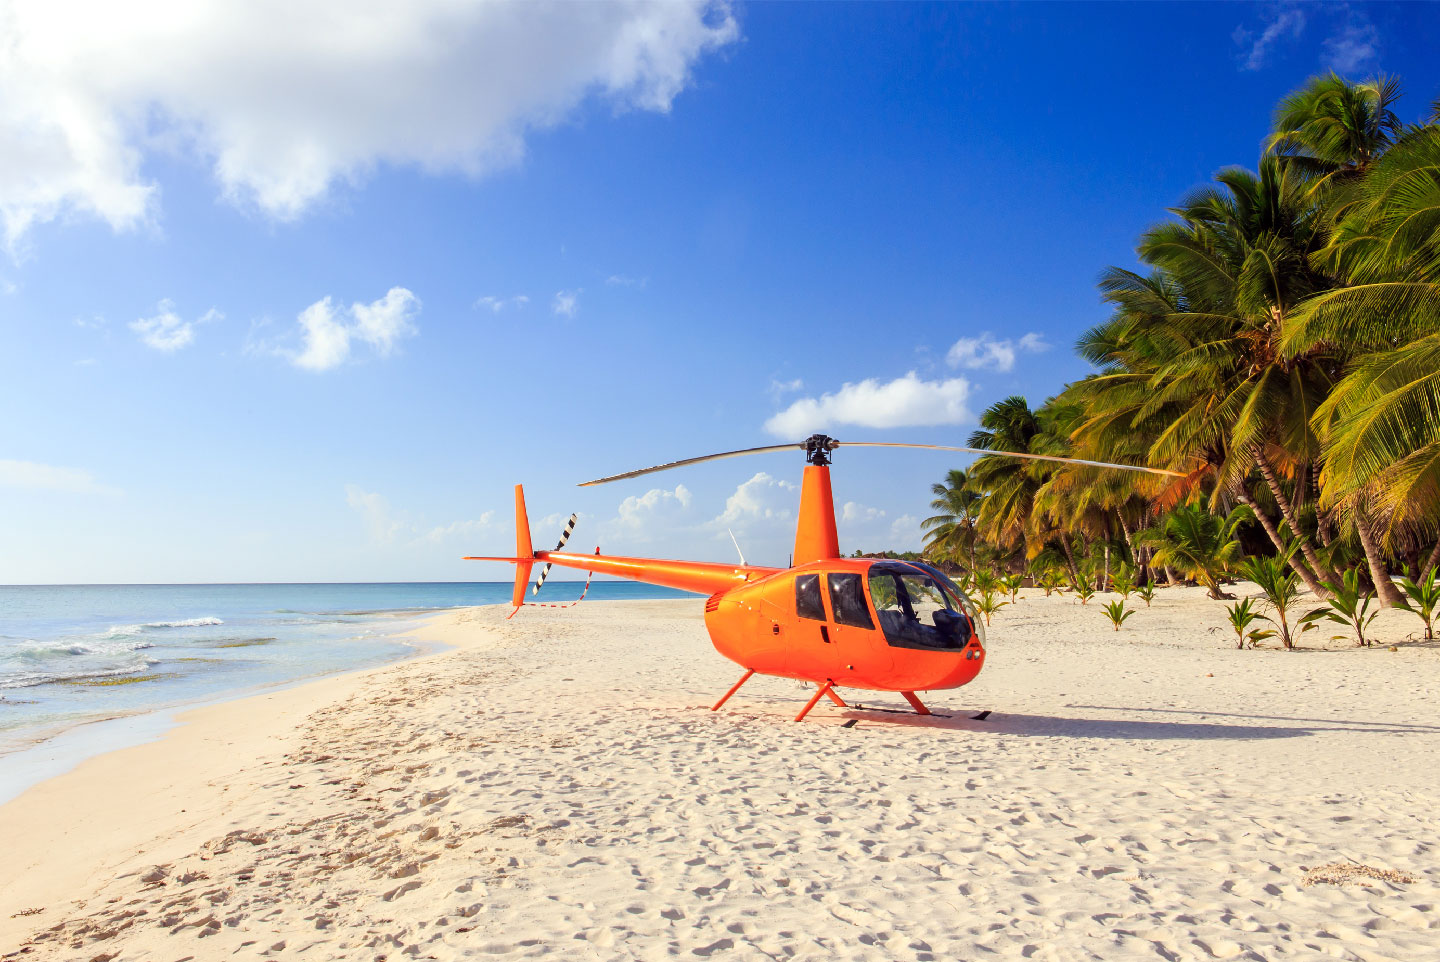 Helicopter Caribe Punta Cana PortBlue Hotel Group